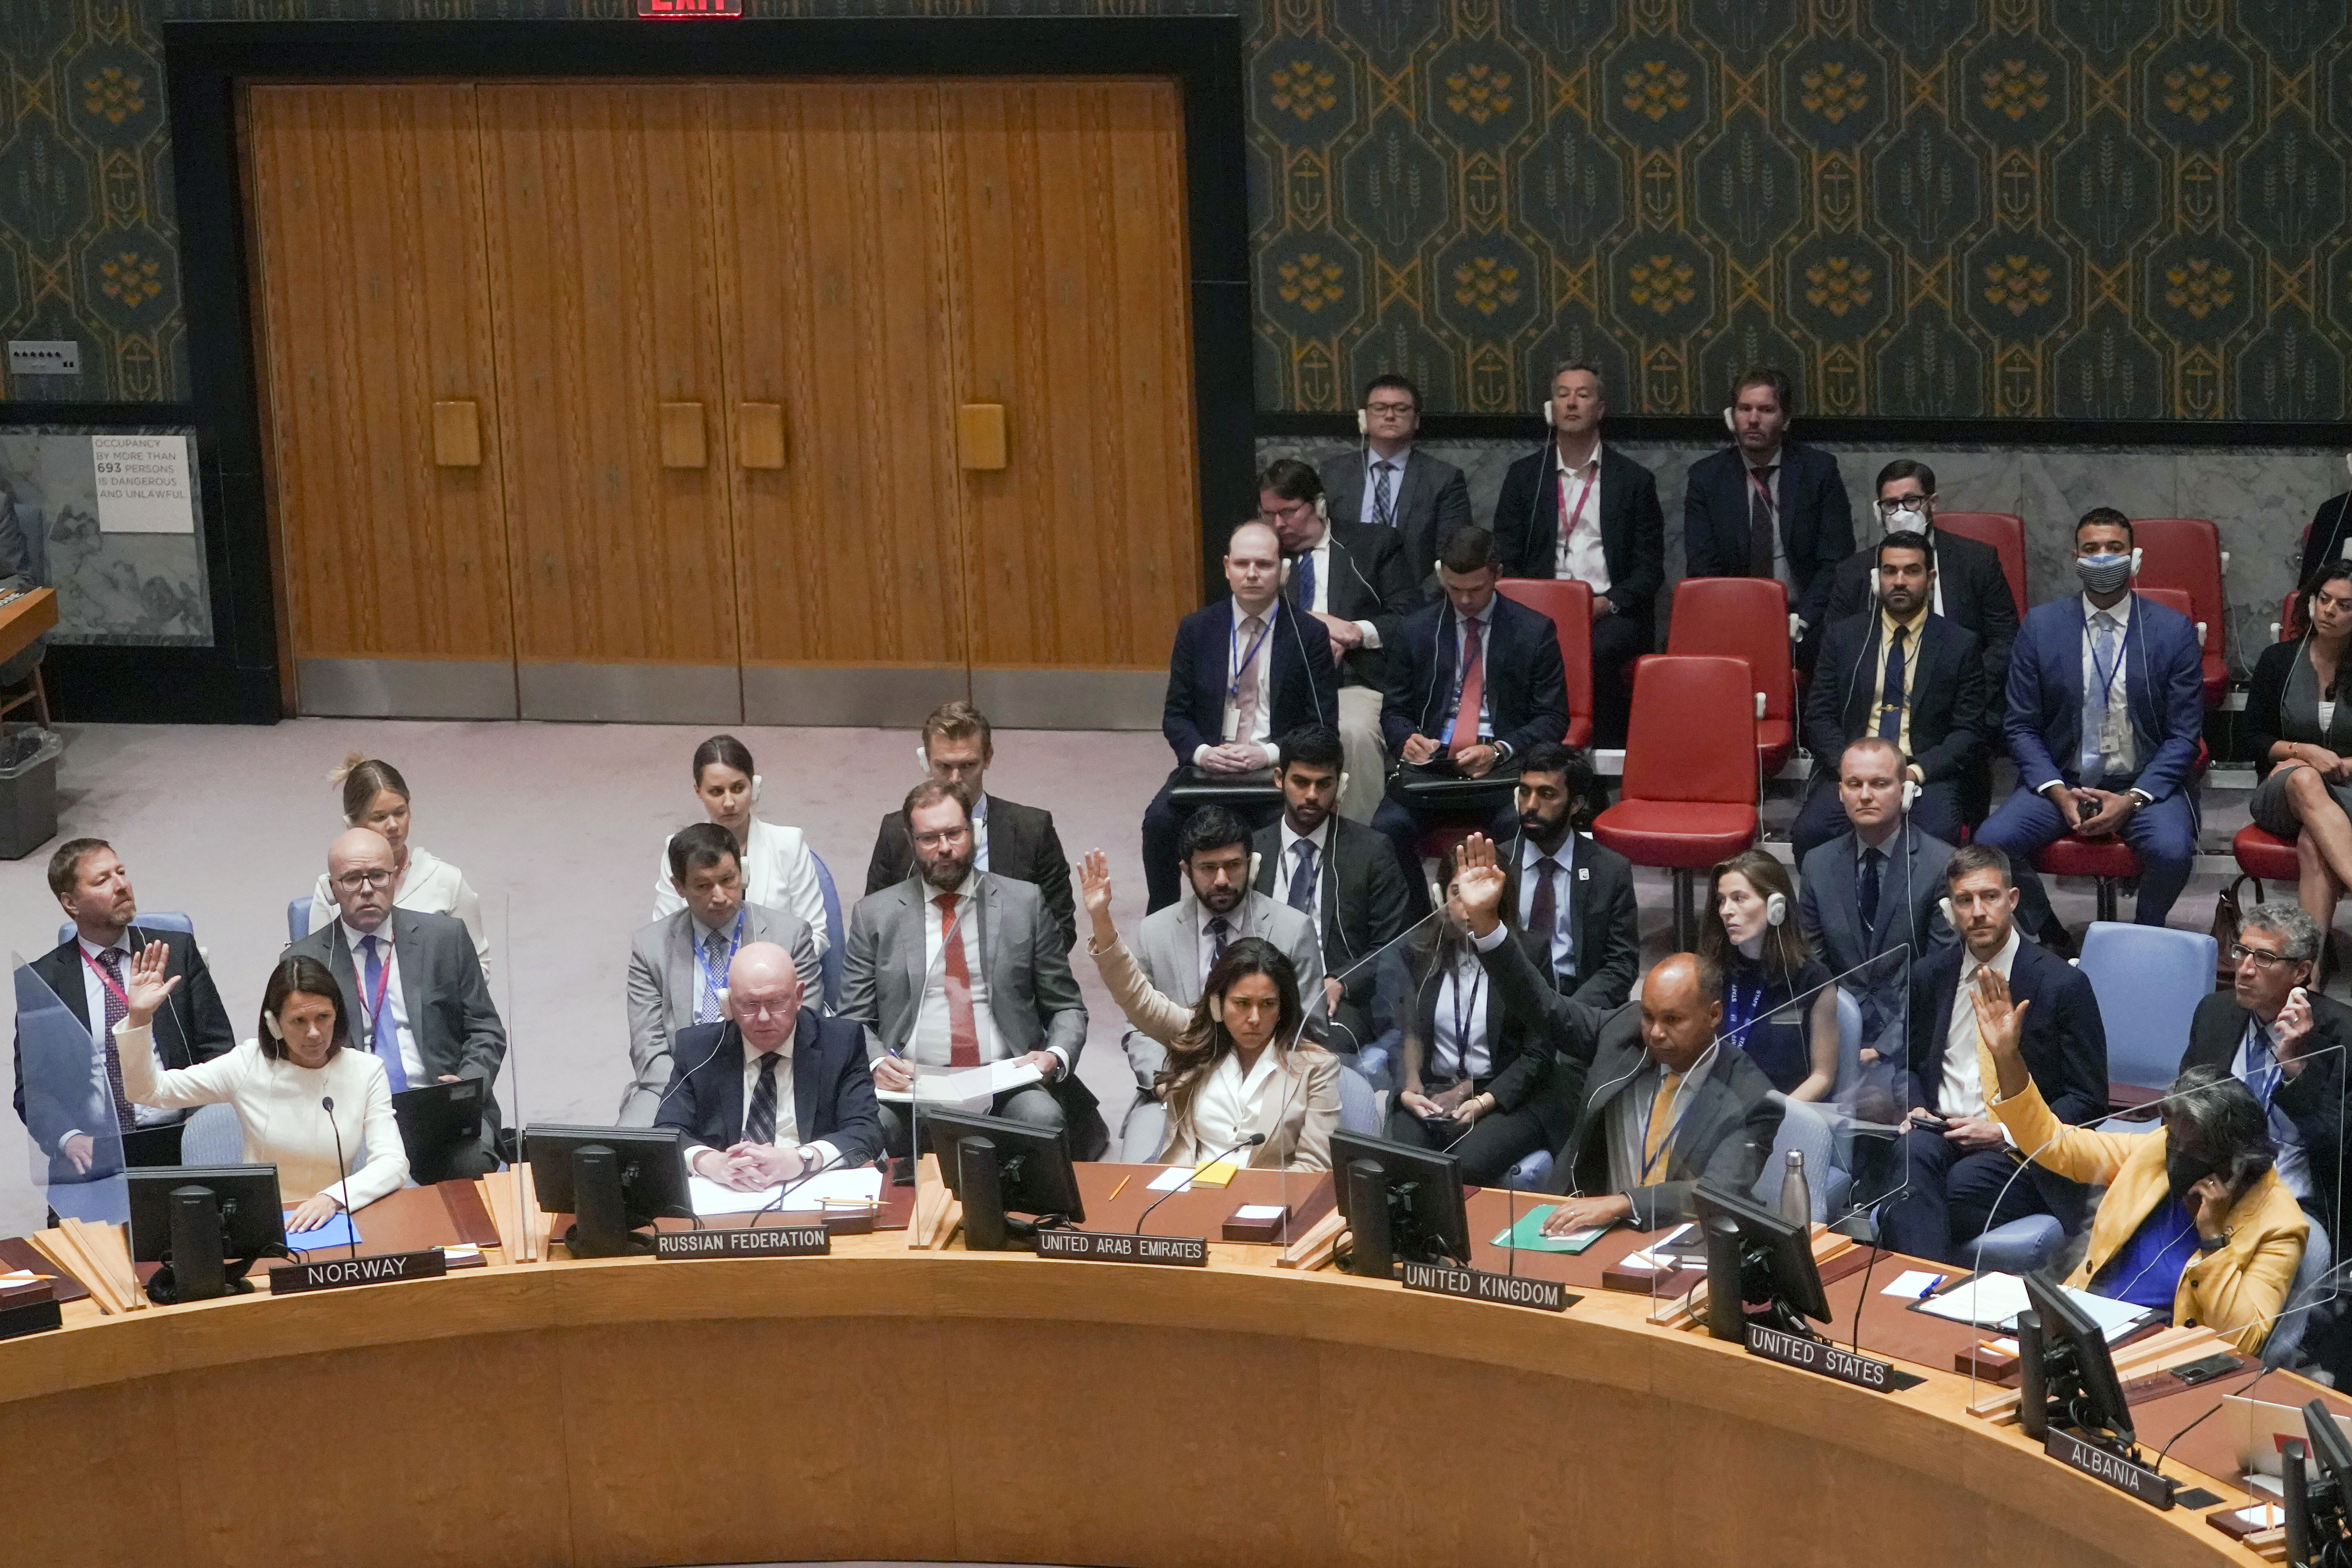 ARCHIVO - Los miembros del Consejo de Seguridad de las Naciones Unidas realizan una votación de procedimiento sobre si permitir que el presidente ucraniano Volodymyr Zelenskyy se dirija a la reunión sobre amenazas a la paz y la seguridad internacionales a través de un enlace de video, el 24 de agosto de 2022, en la sede de las Naciones Unidas.  (Foto AP/Mary Altaffer, archivo)

